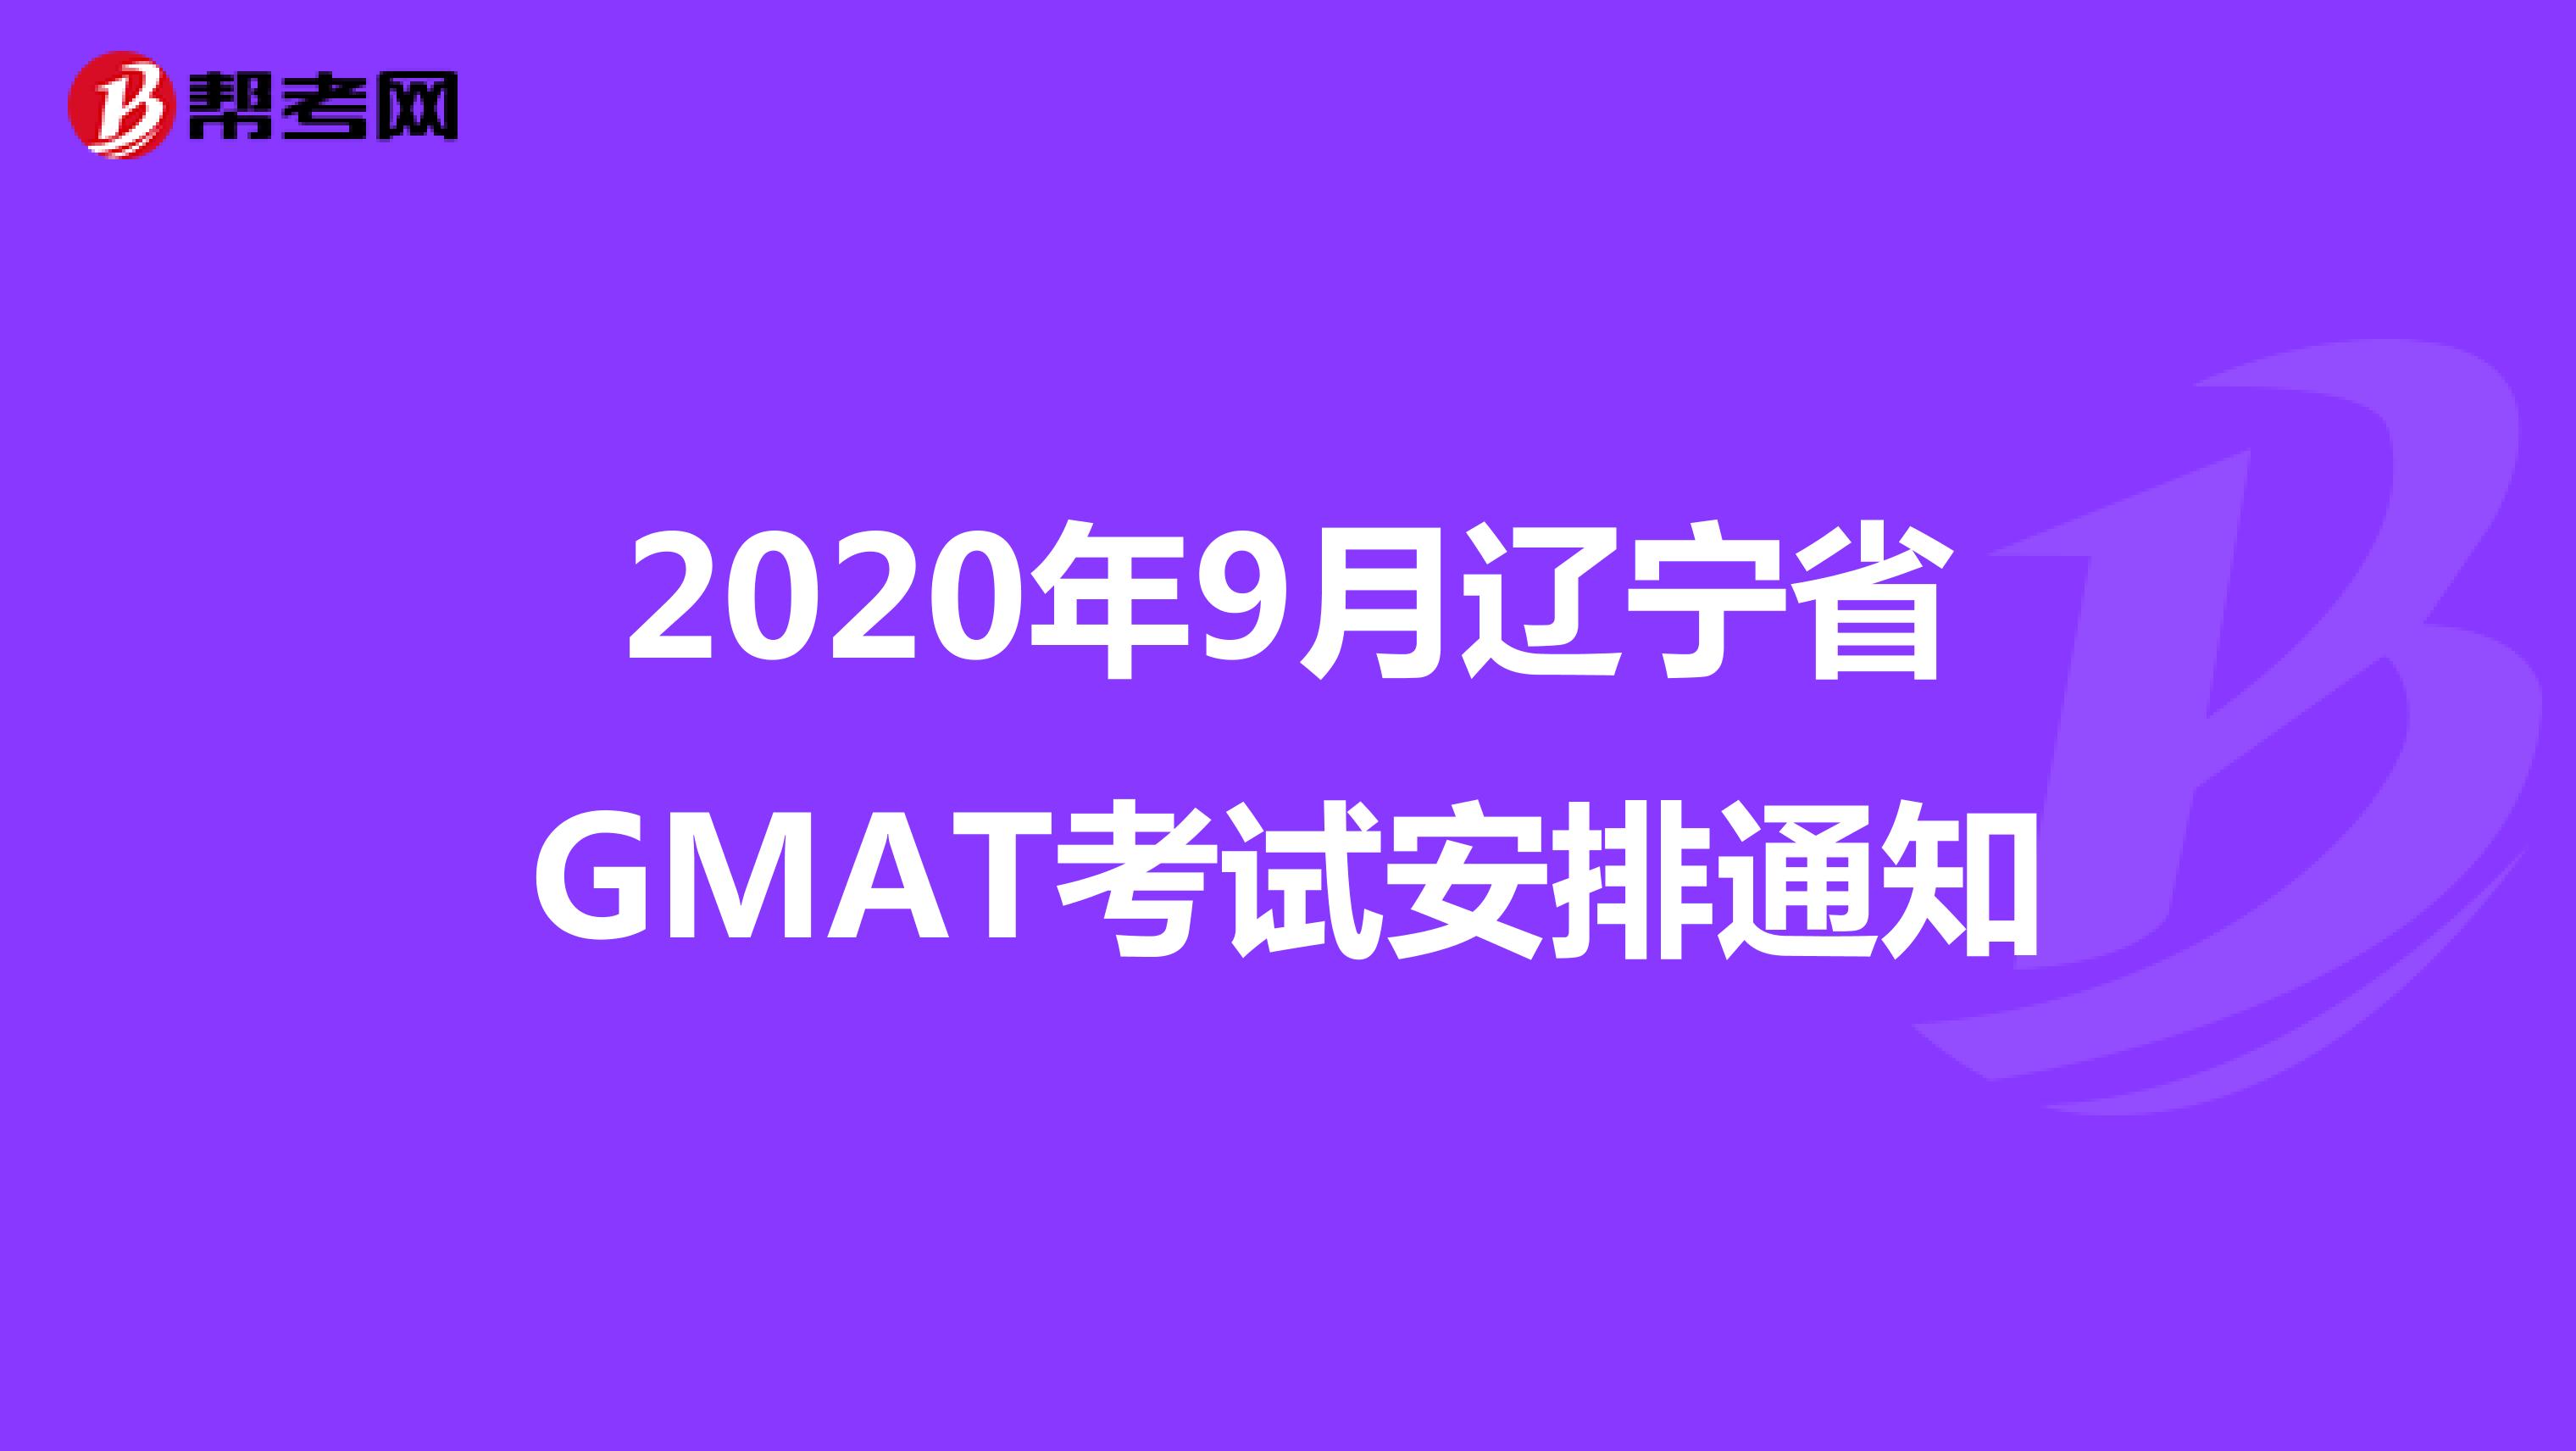 2020年9月辽宁省GMAT考试安排通知